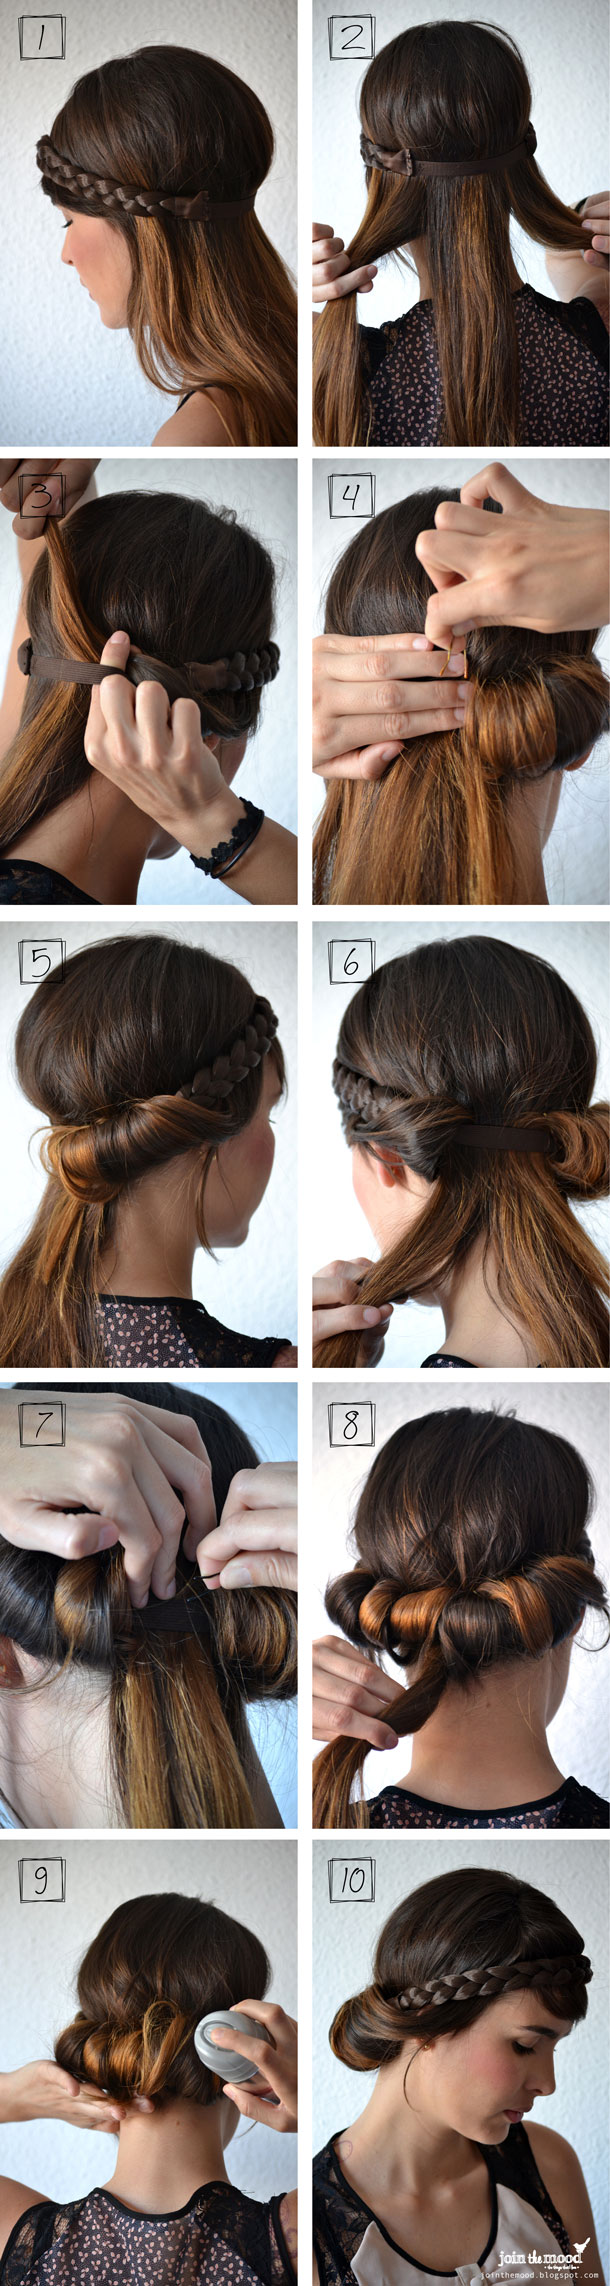 braid-headbandsteps